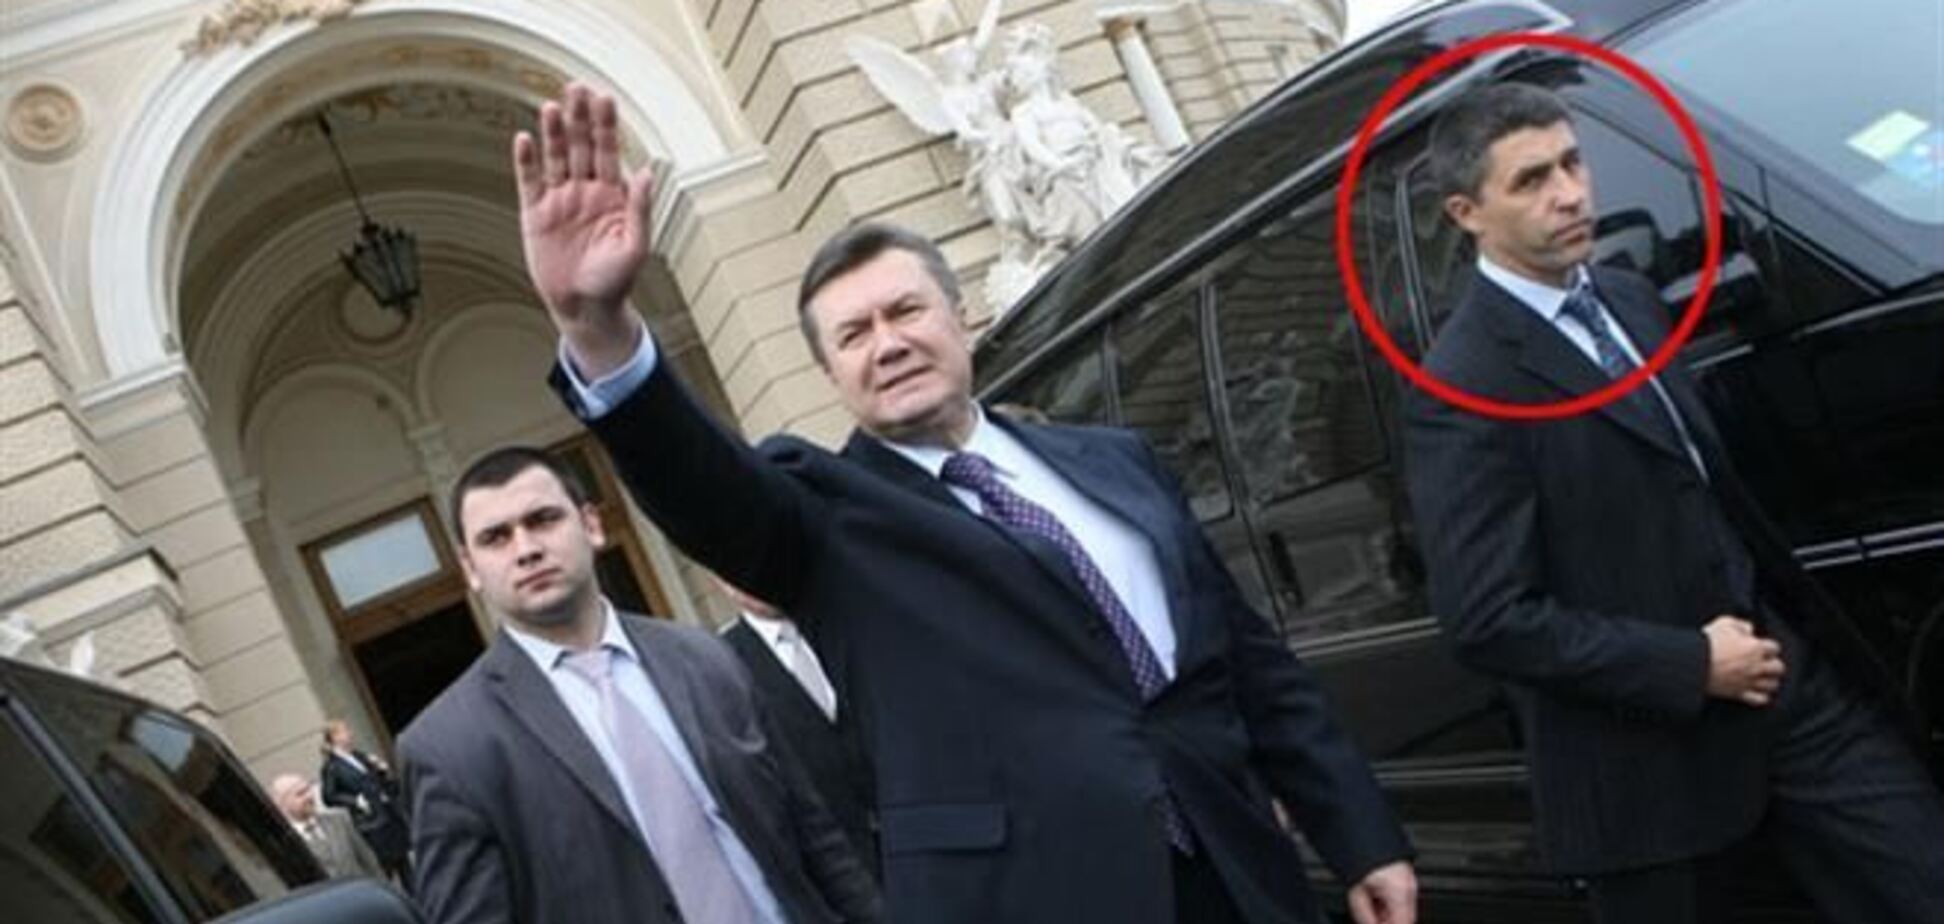 За замечание мог дать по печени - главный охранник Януковича